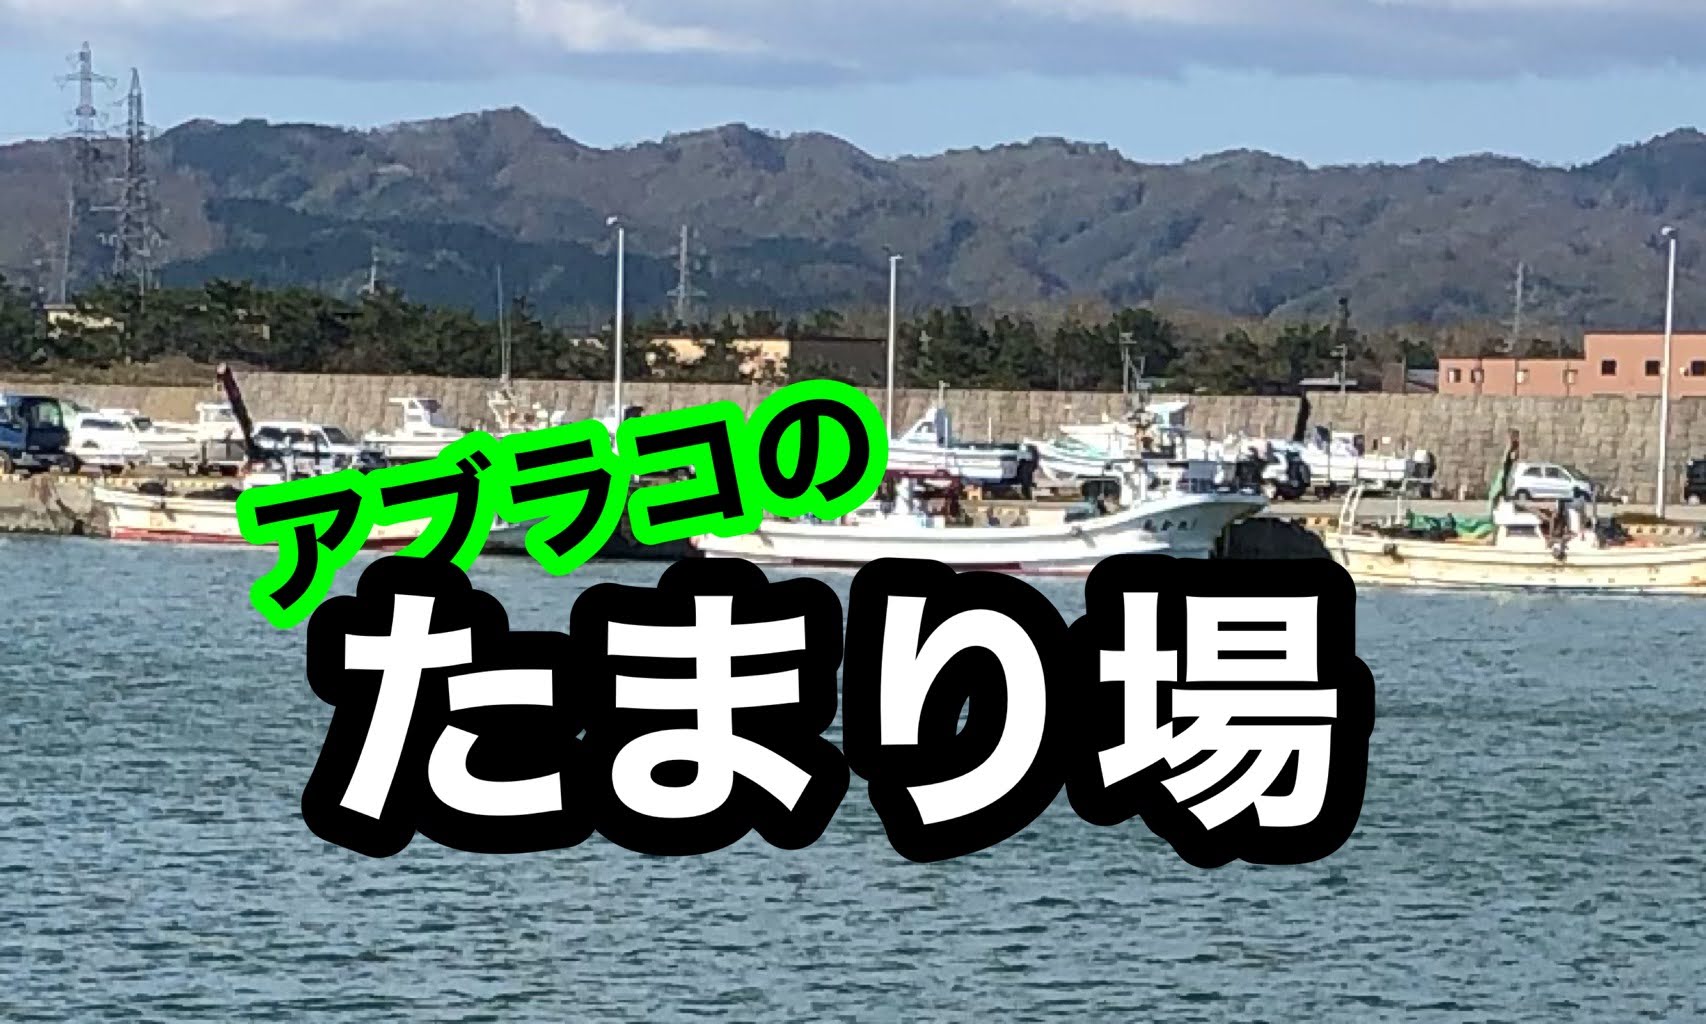 北海道 アブラコ アイナメ のたまり場を知ろう 釣果アップの秘訣